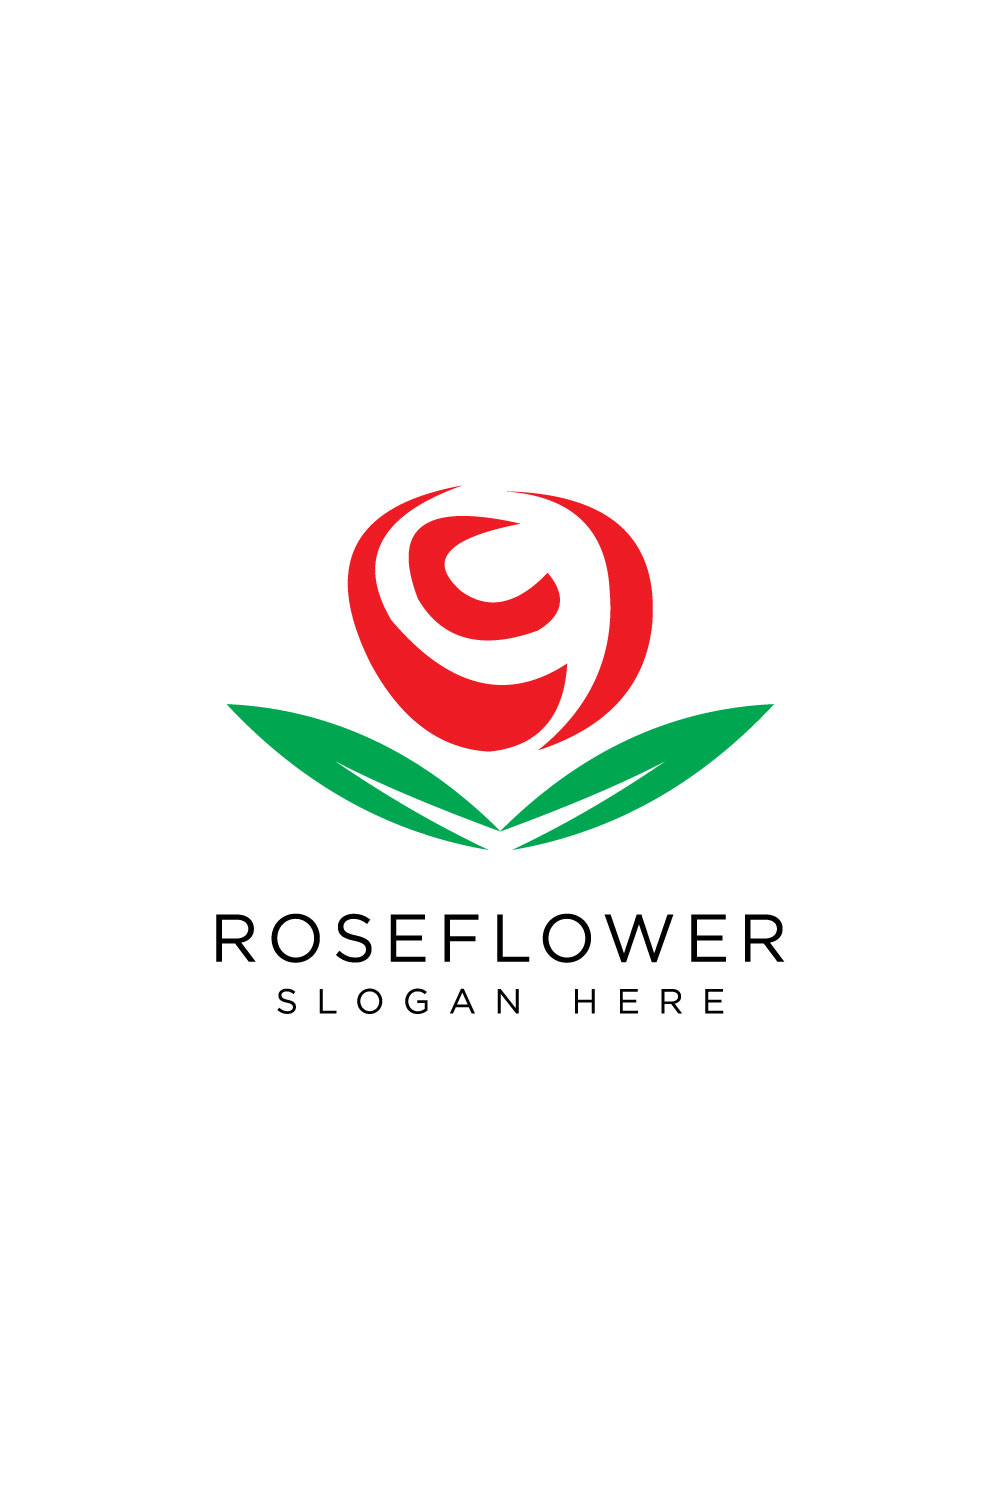 rose flower logo design vector pinterest preview image.